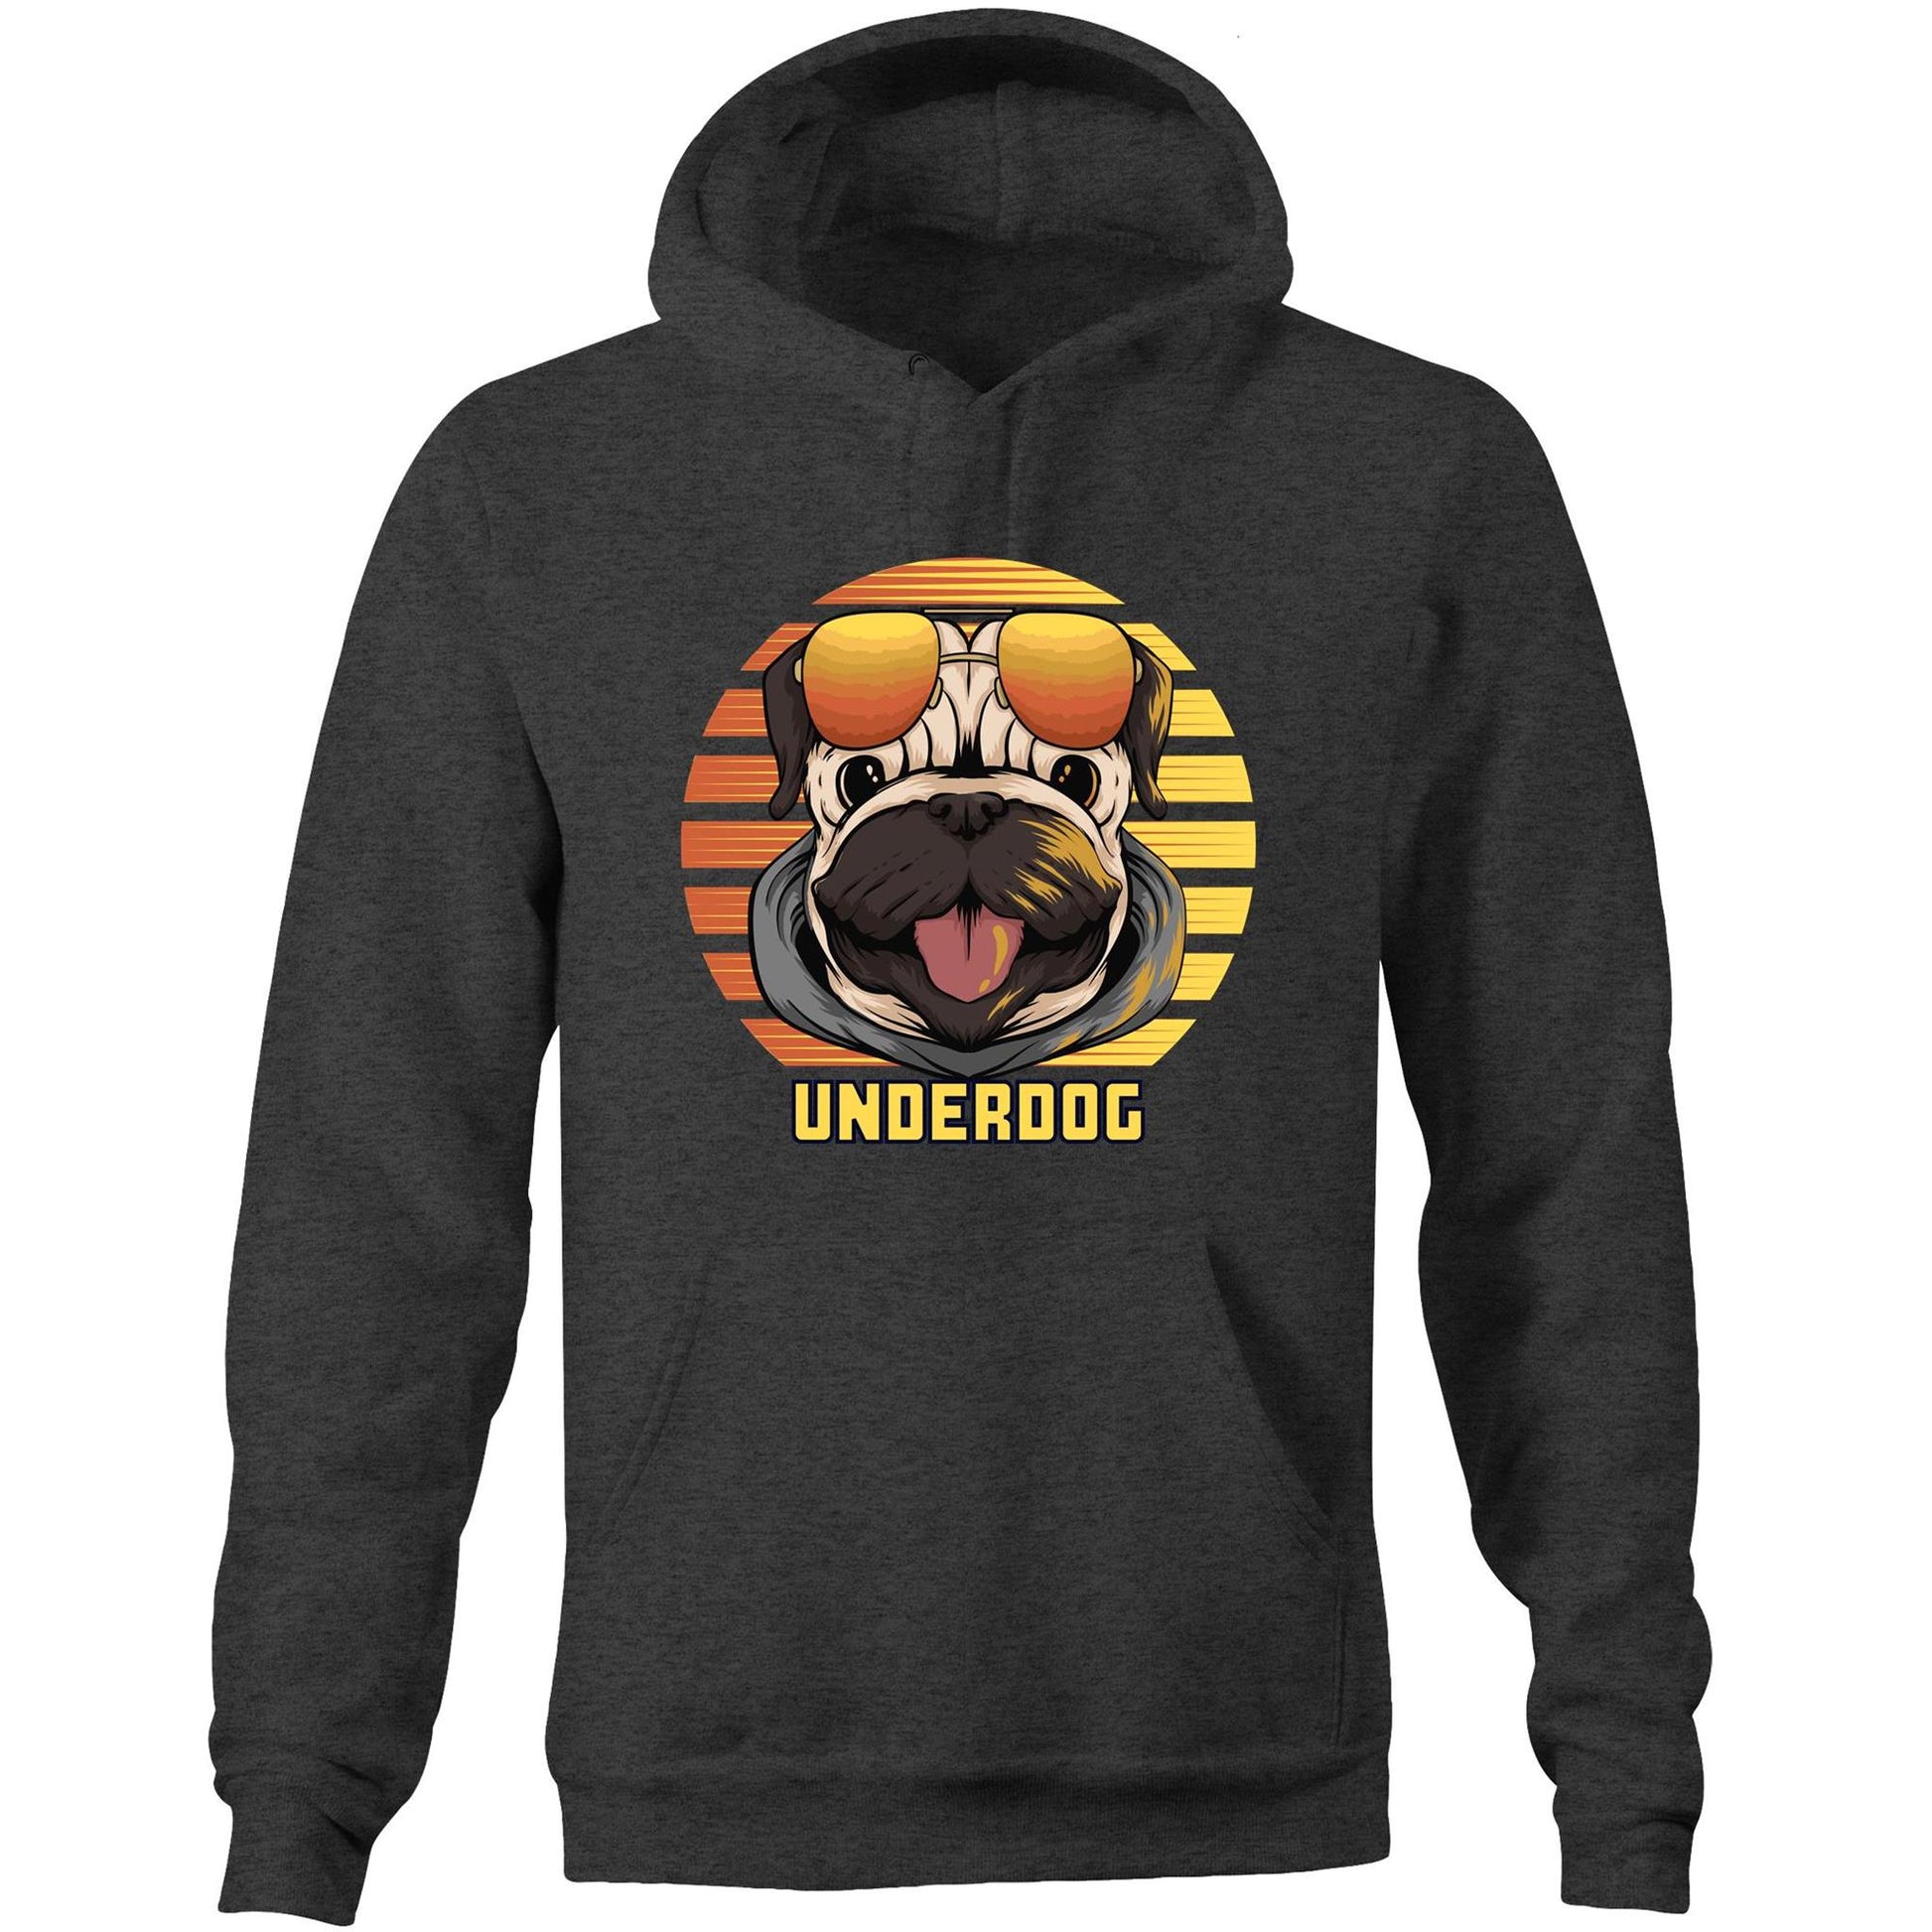 Underdog - Pocket Hoodie Sweatshirt Asphalt Marle Hoodie animal